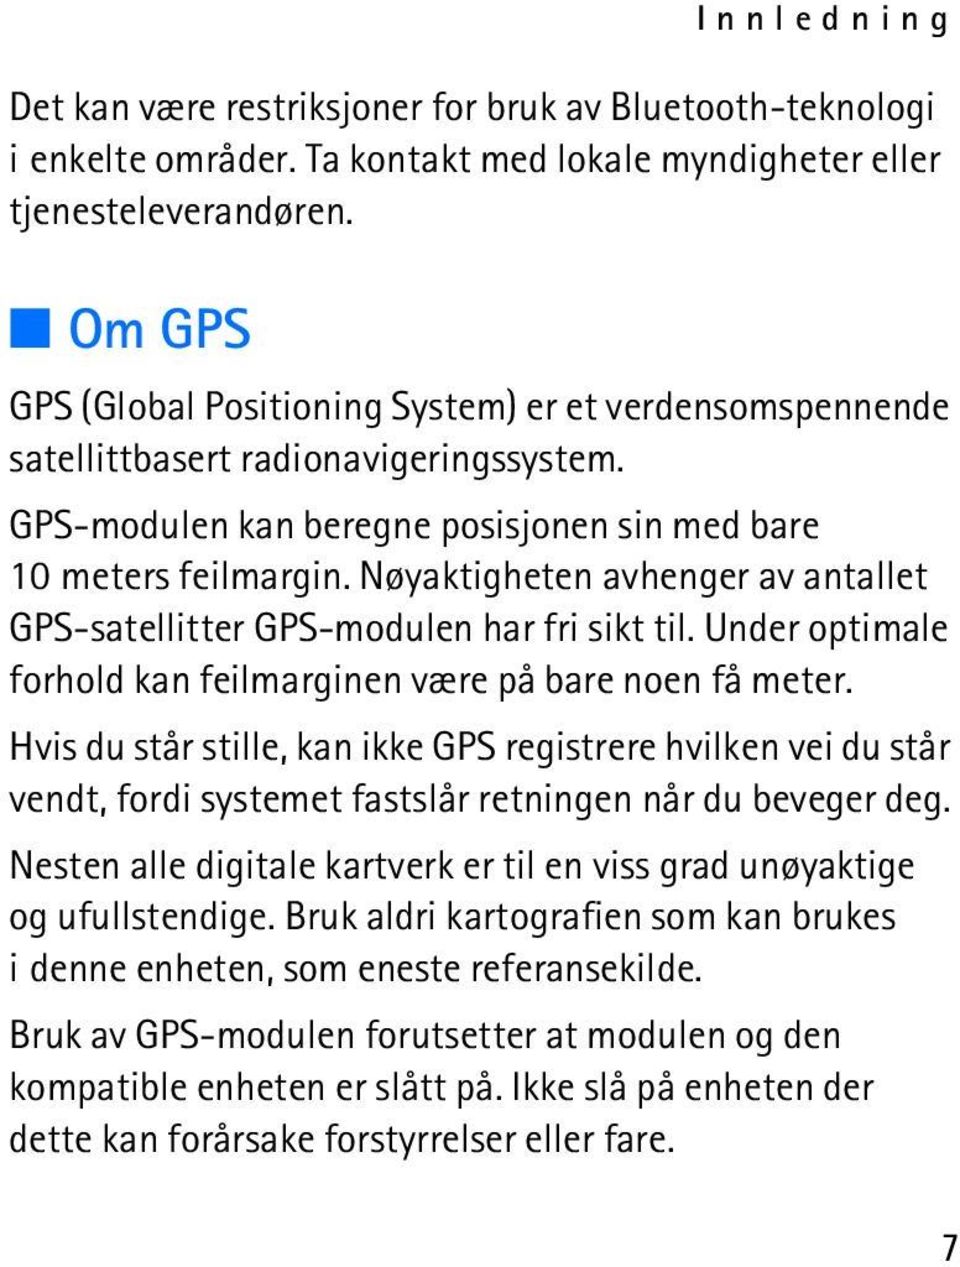 Nøyaktigheten avhenger av antallet GPS-satellitter GPS-modulen har fri sikt til. Under optimale forhold kan feilmarginen være på bare noen få meter.